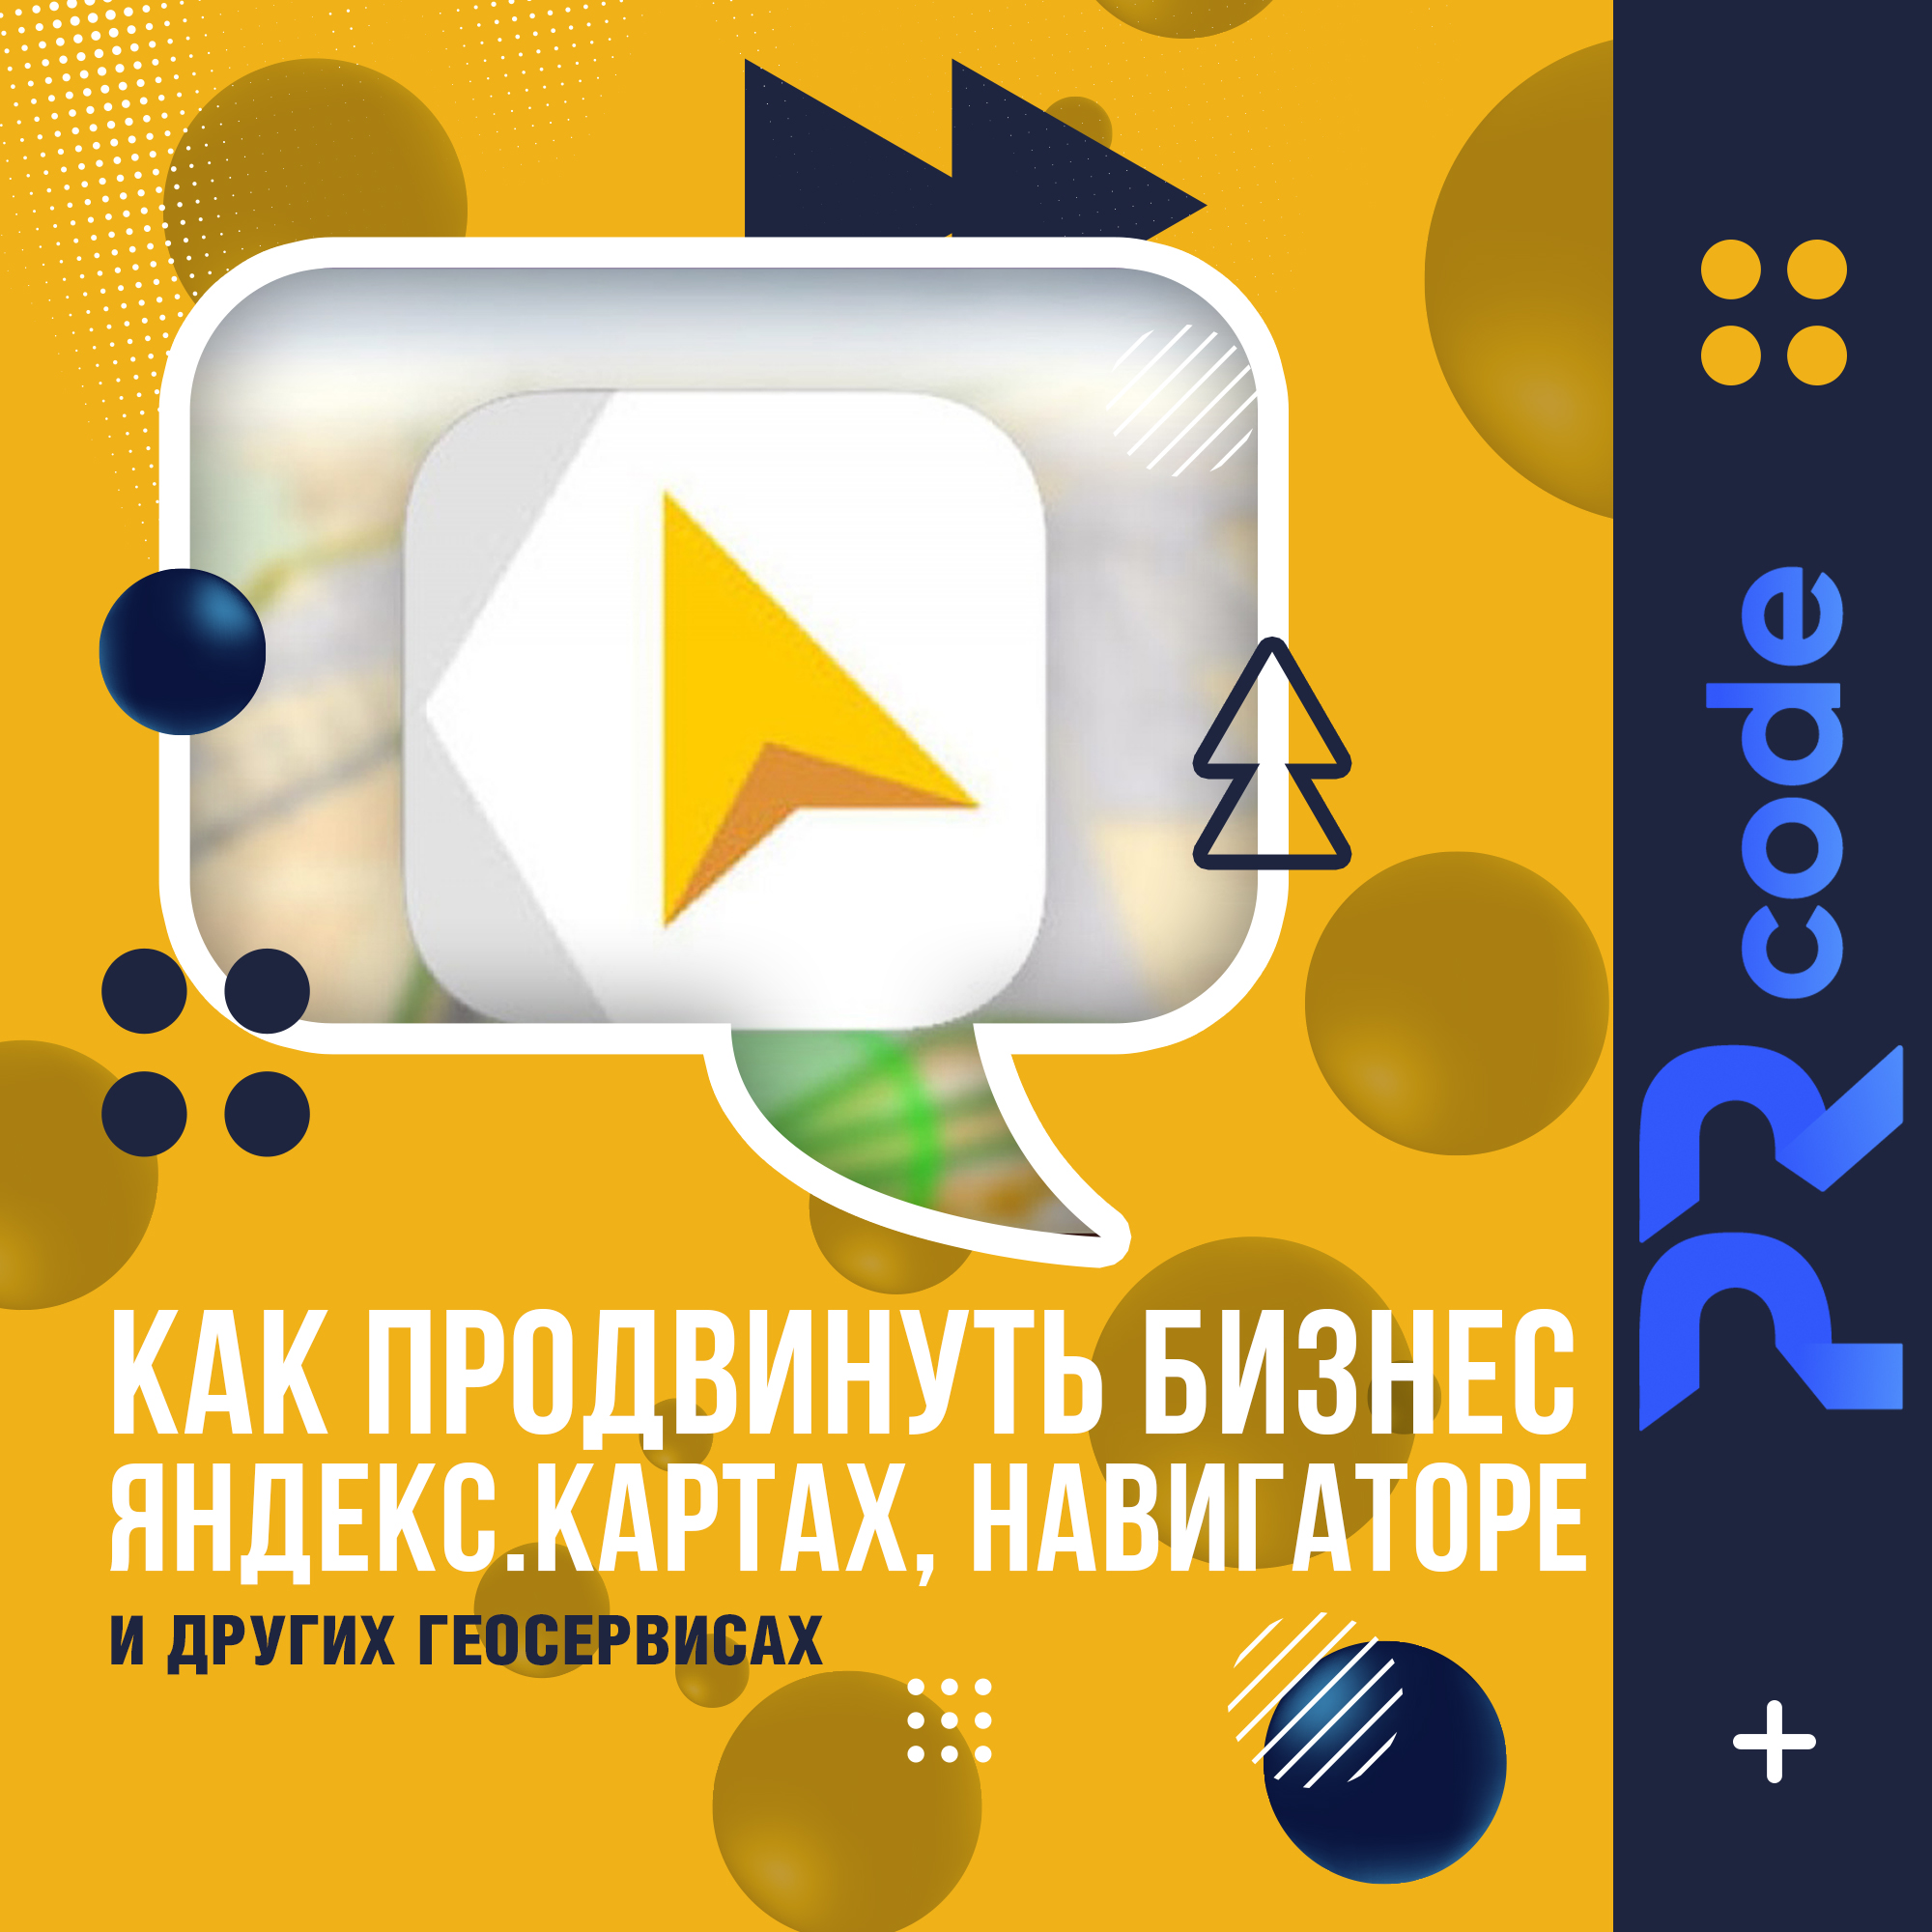 geo o Как продвинуть бизнес в Яндекс.Картах, Навигаторе и других геосервисах